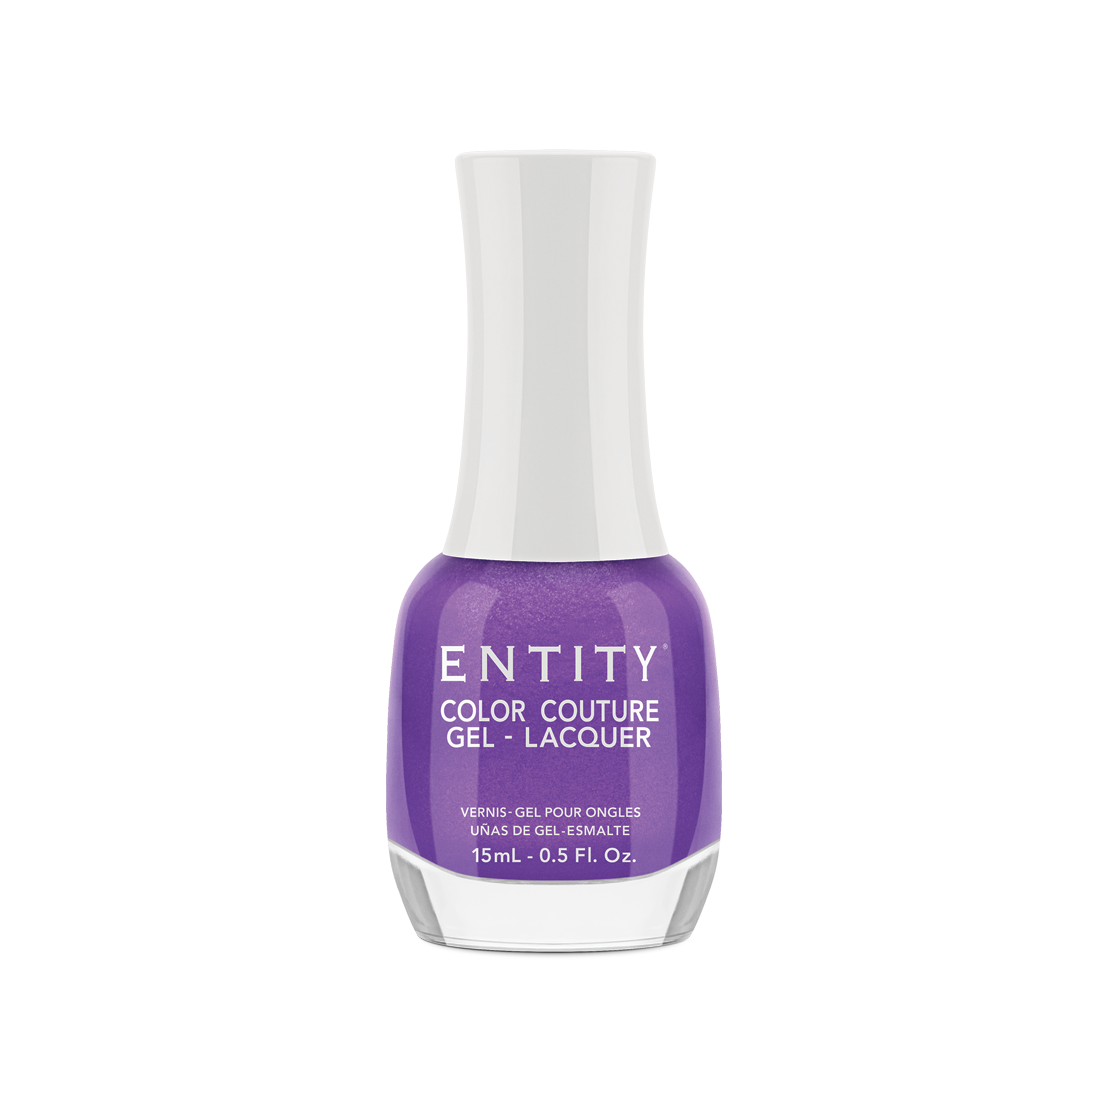 Entity Gel Lacquer - Elegant Edge 15 mL/0.5 Fl. Oz